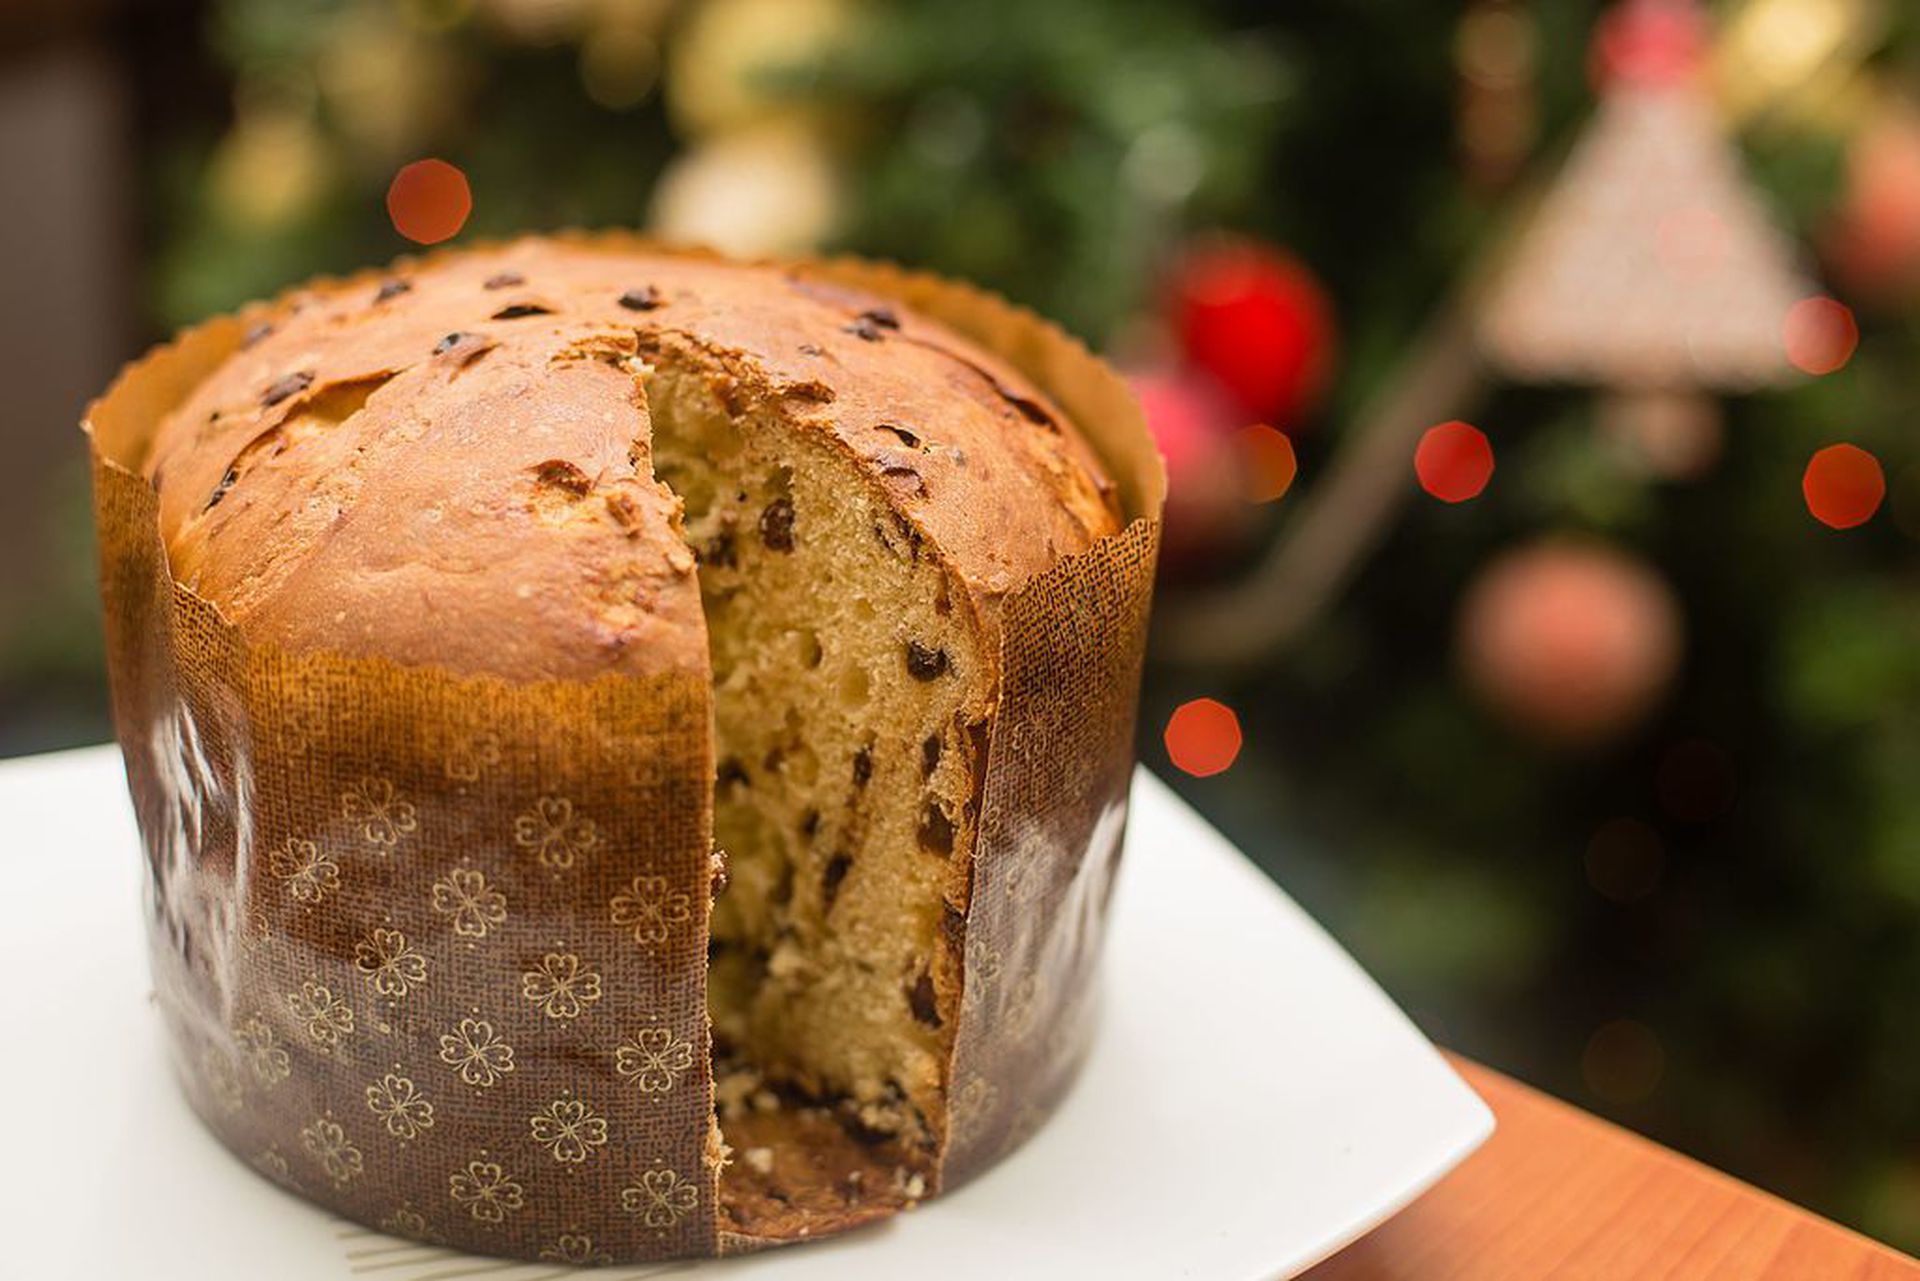 圣诞节面包用脯和搽粉的糖在基督 库存照片. 图片 包括有 蜡烛, 有阳台, 自创, 土气, 节假日, 蛋糕 - 126298294